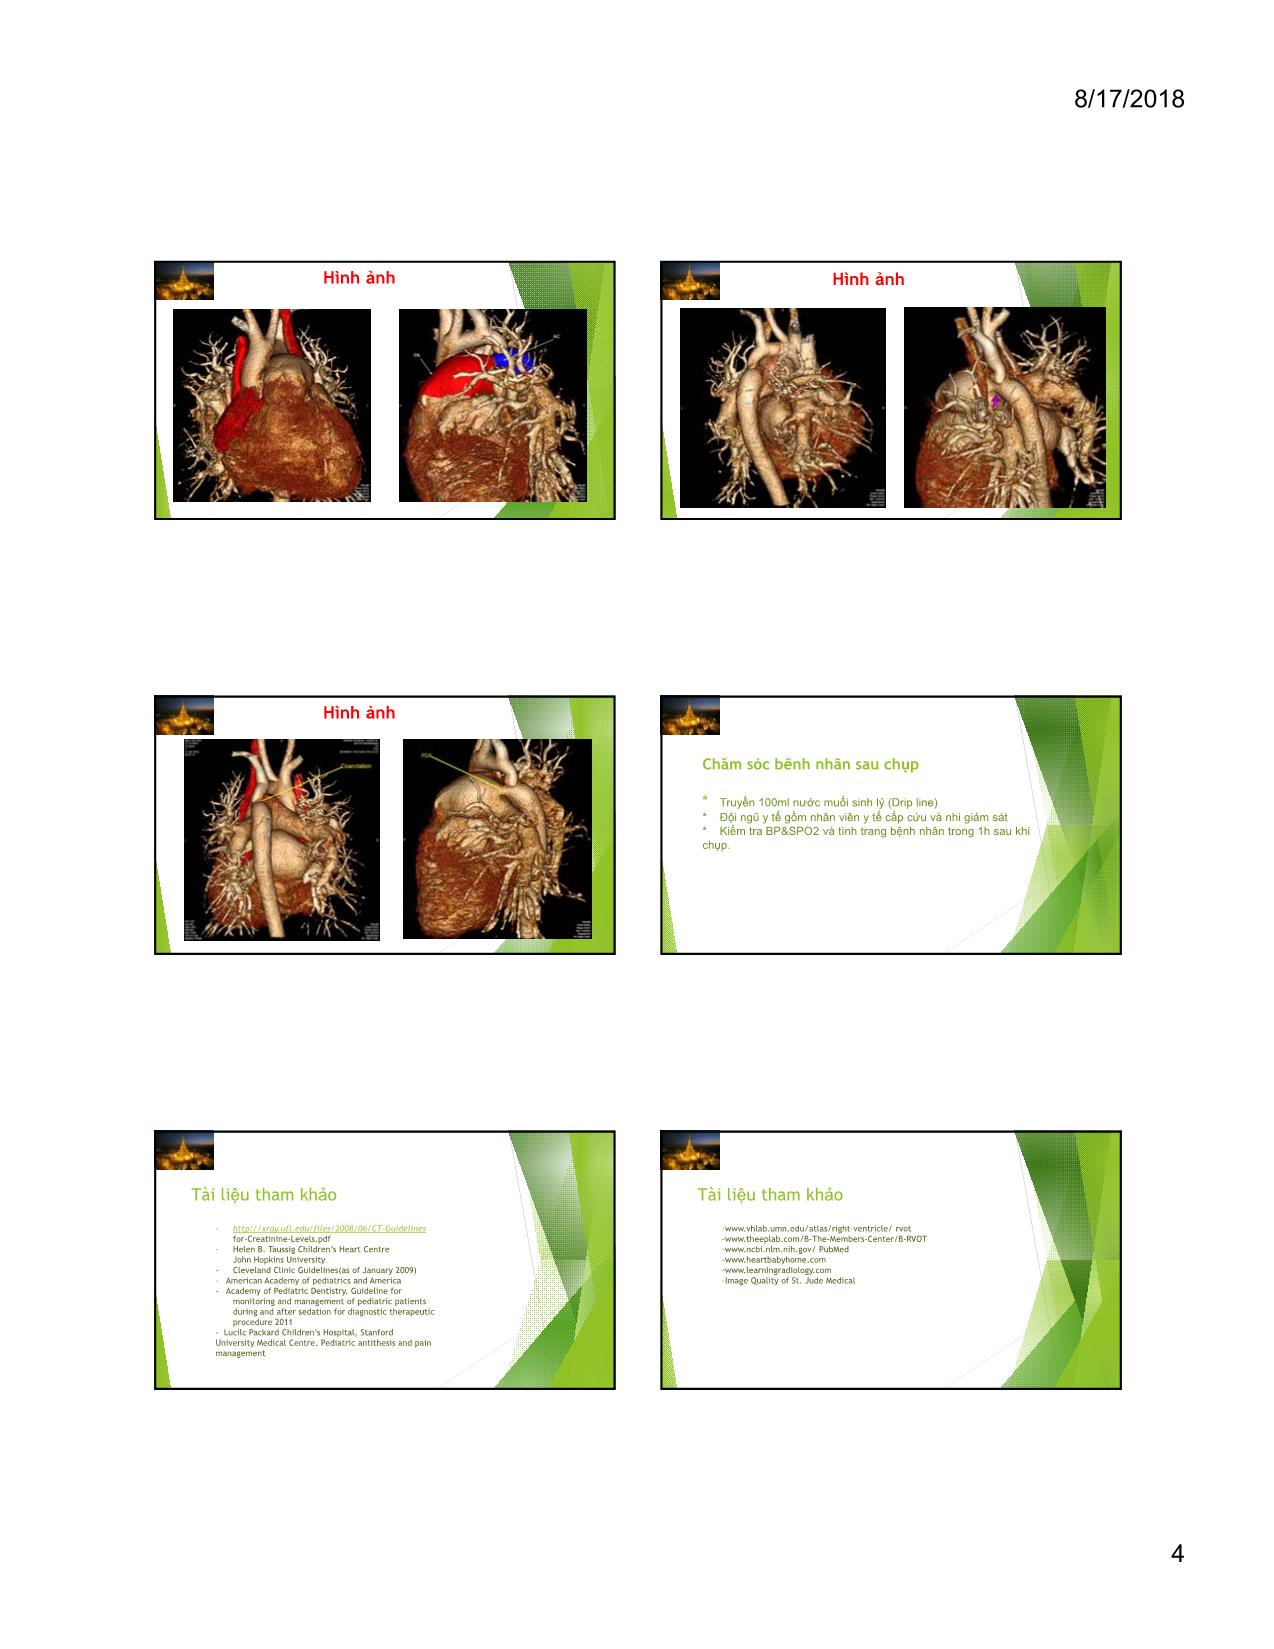 Chụp mạch vành cho bệnh nhân nhi để đánh giá ROVT và các bất thường liên quan trang 4